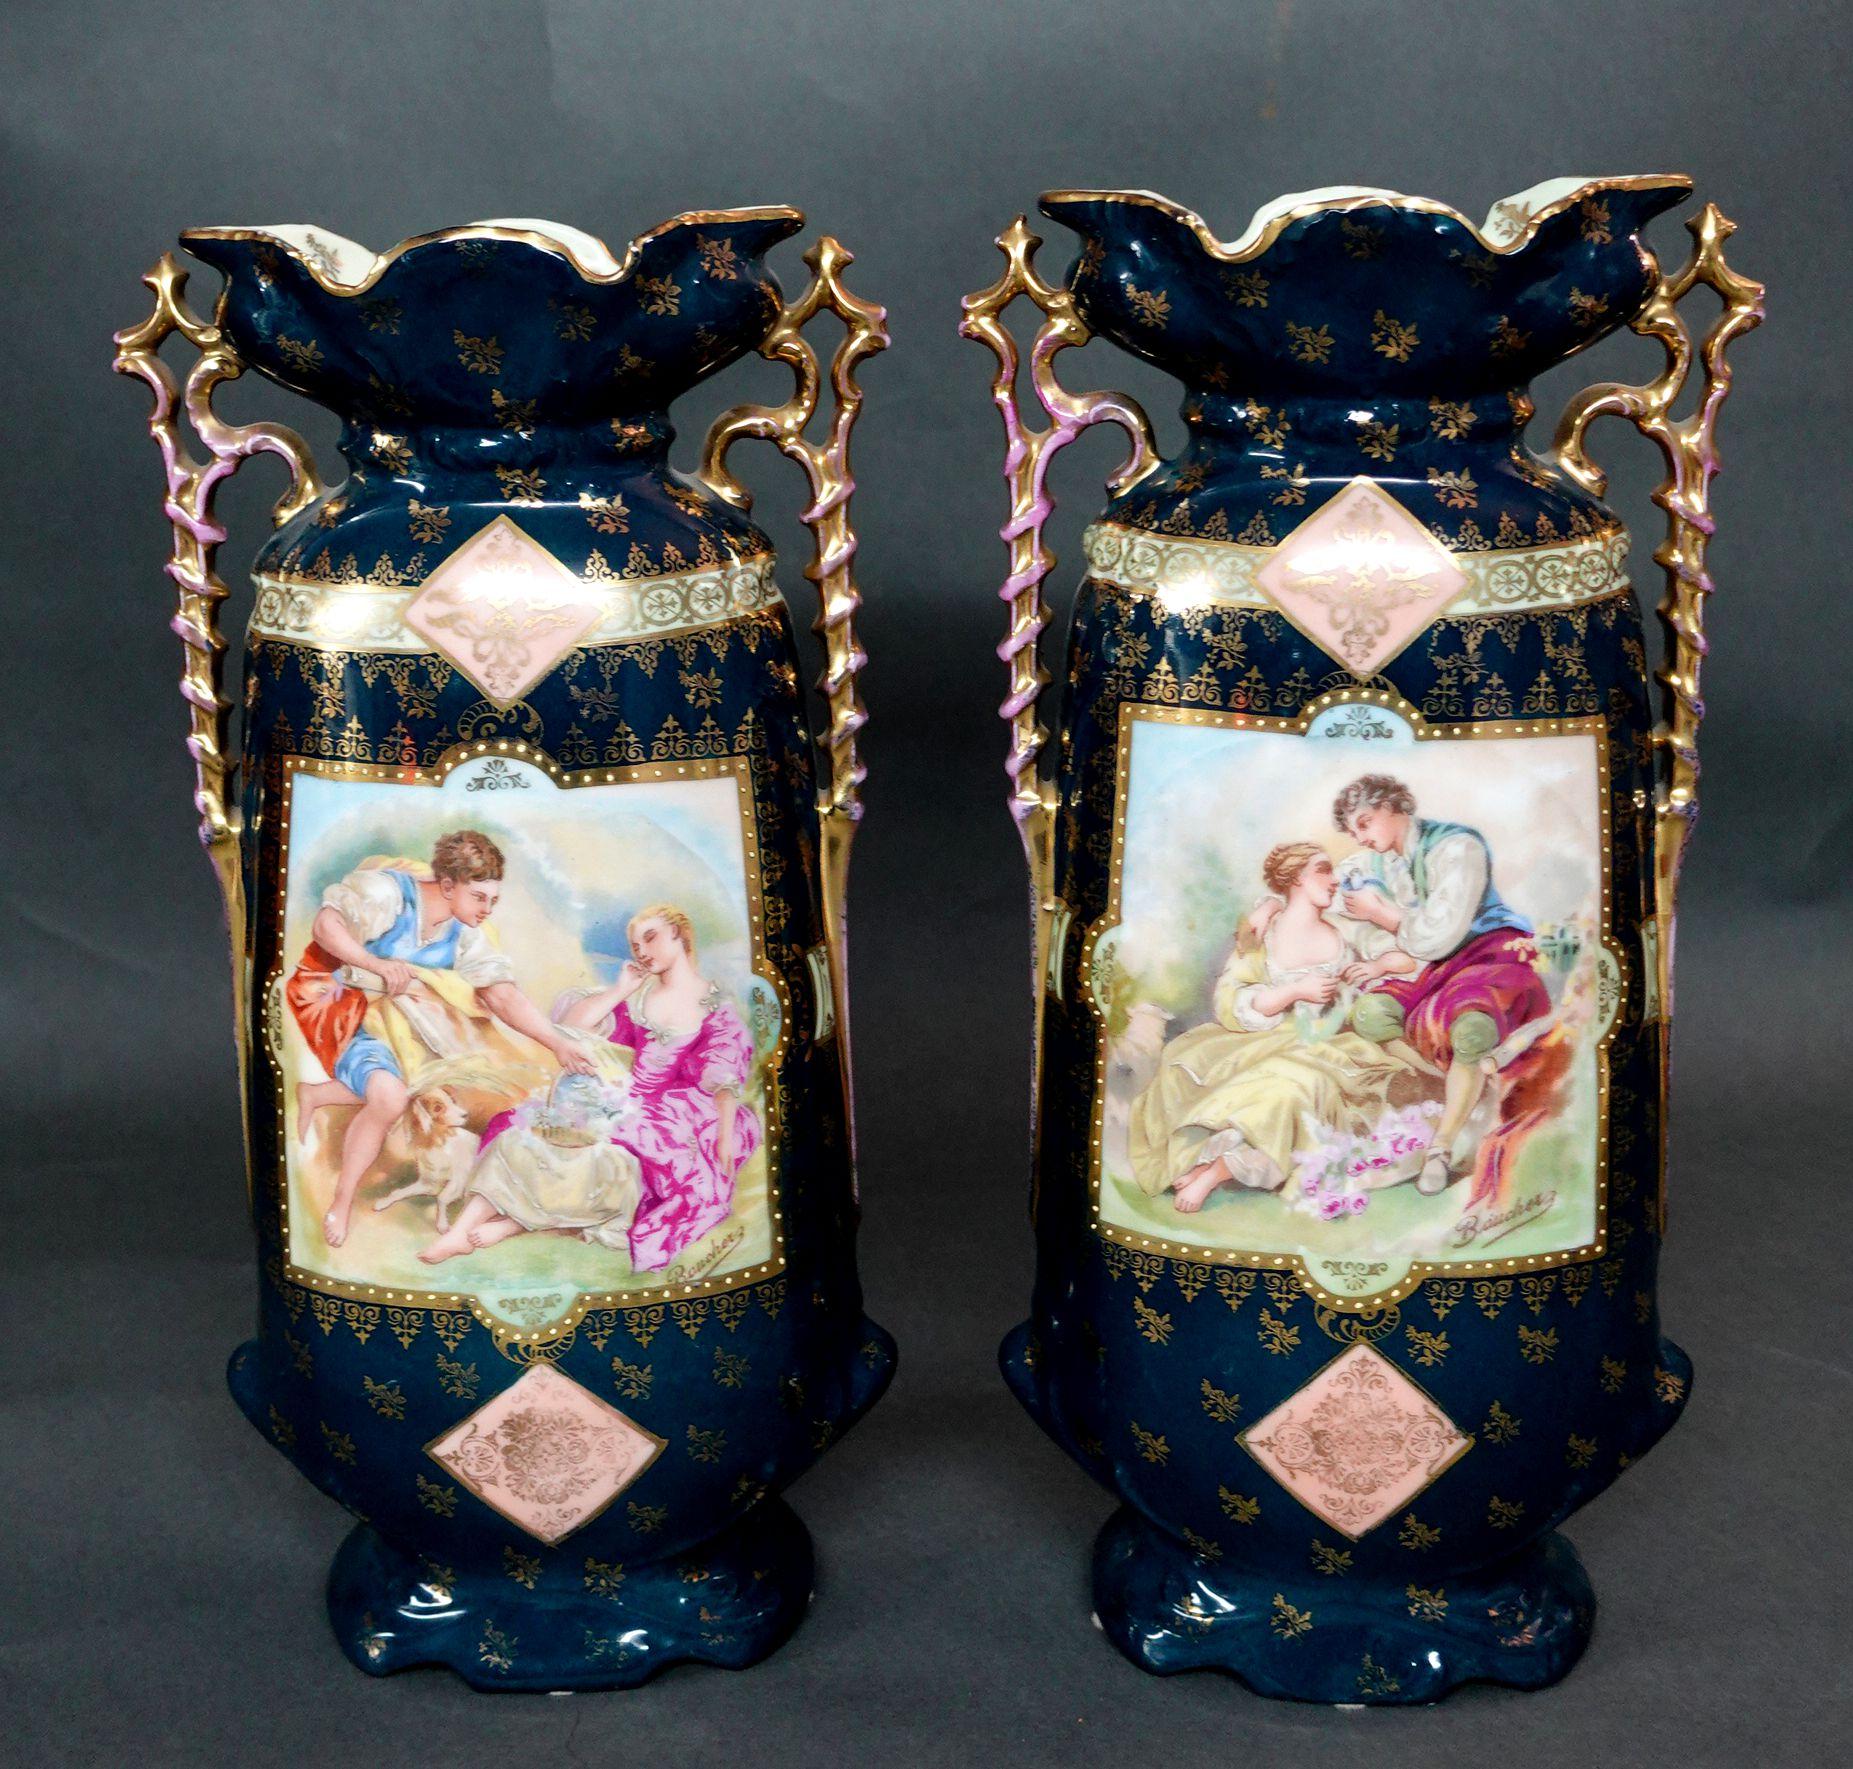 PAIR VASES MANTELLES EN PORCELAINE ORNATE C.C. 19ème siècle. La face avant de chaque vase est ornée d'une scène de cour peinte par l'artiste français Boucher et l'ensemble est orné d'un décor doré. Le dessous de chaque vase est marqué Victoria